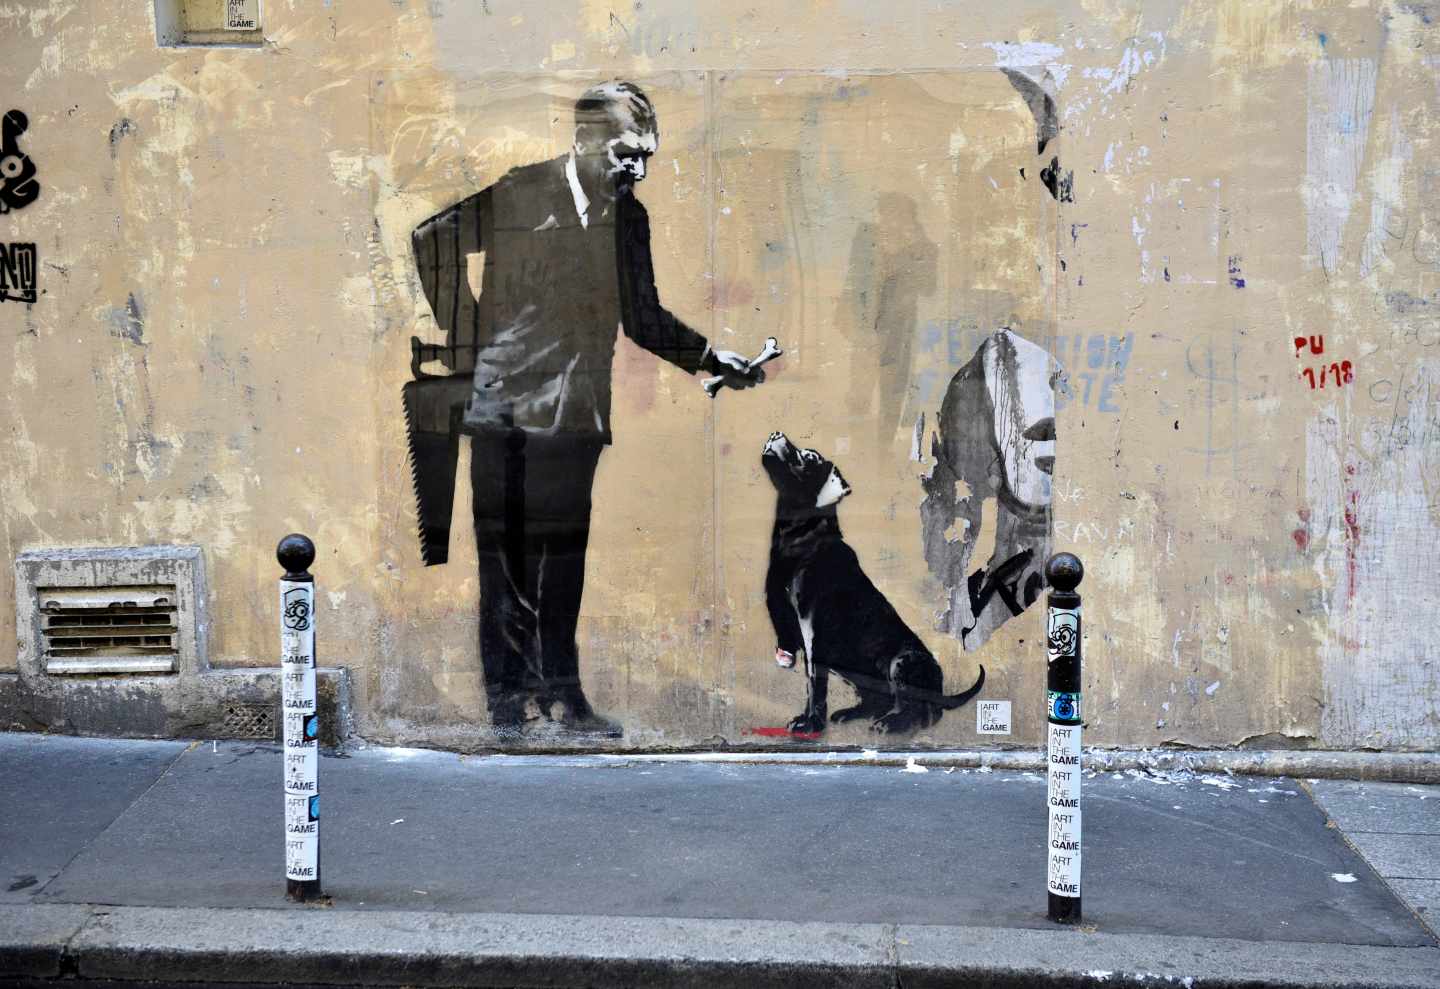 Pintura de Banksy en la que se ve a un hombre dando de comer a un perro, pintura localizada cerca de la Sorbona